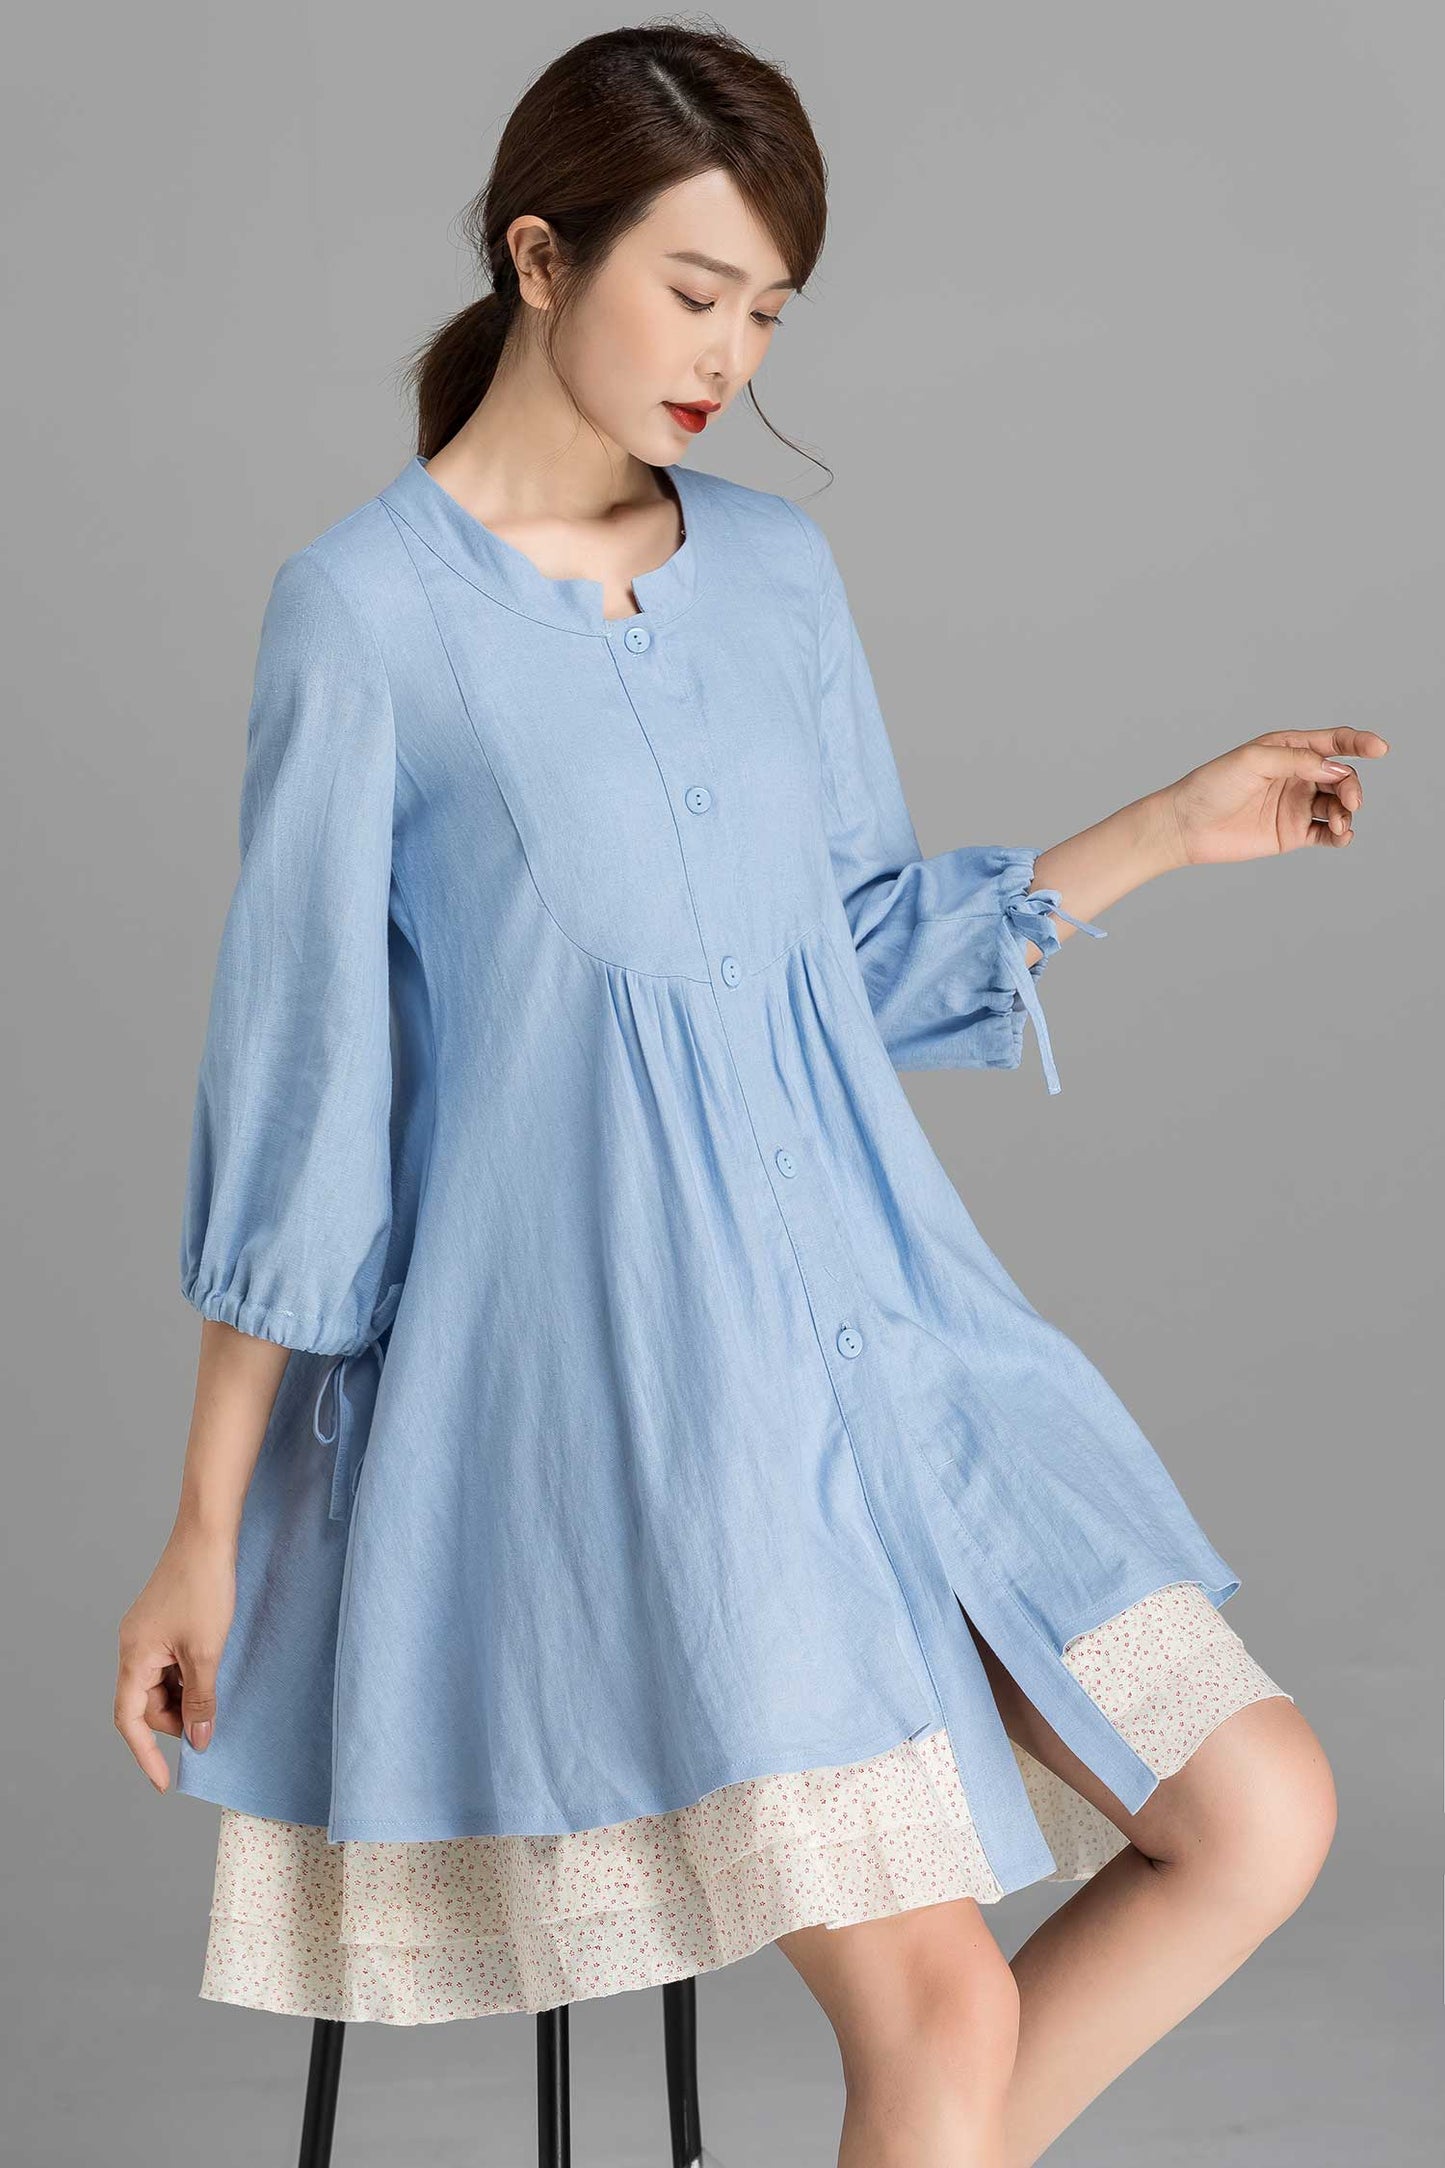 Linen shirt tunic dress in Blue 2358#